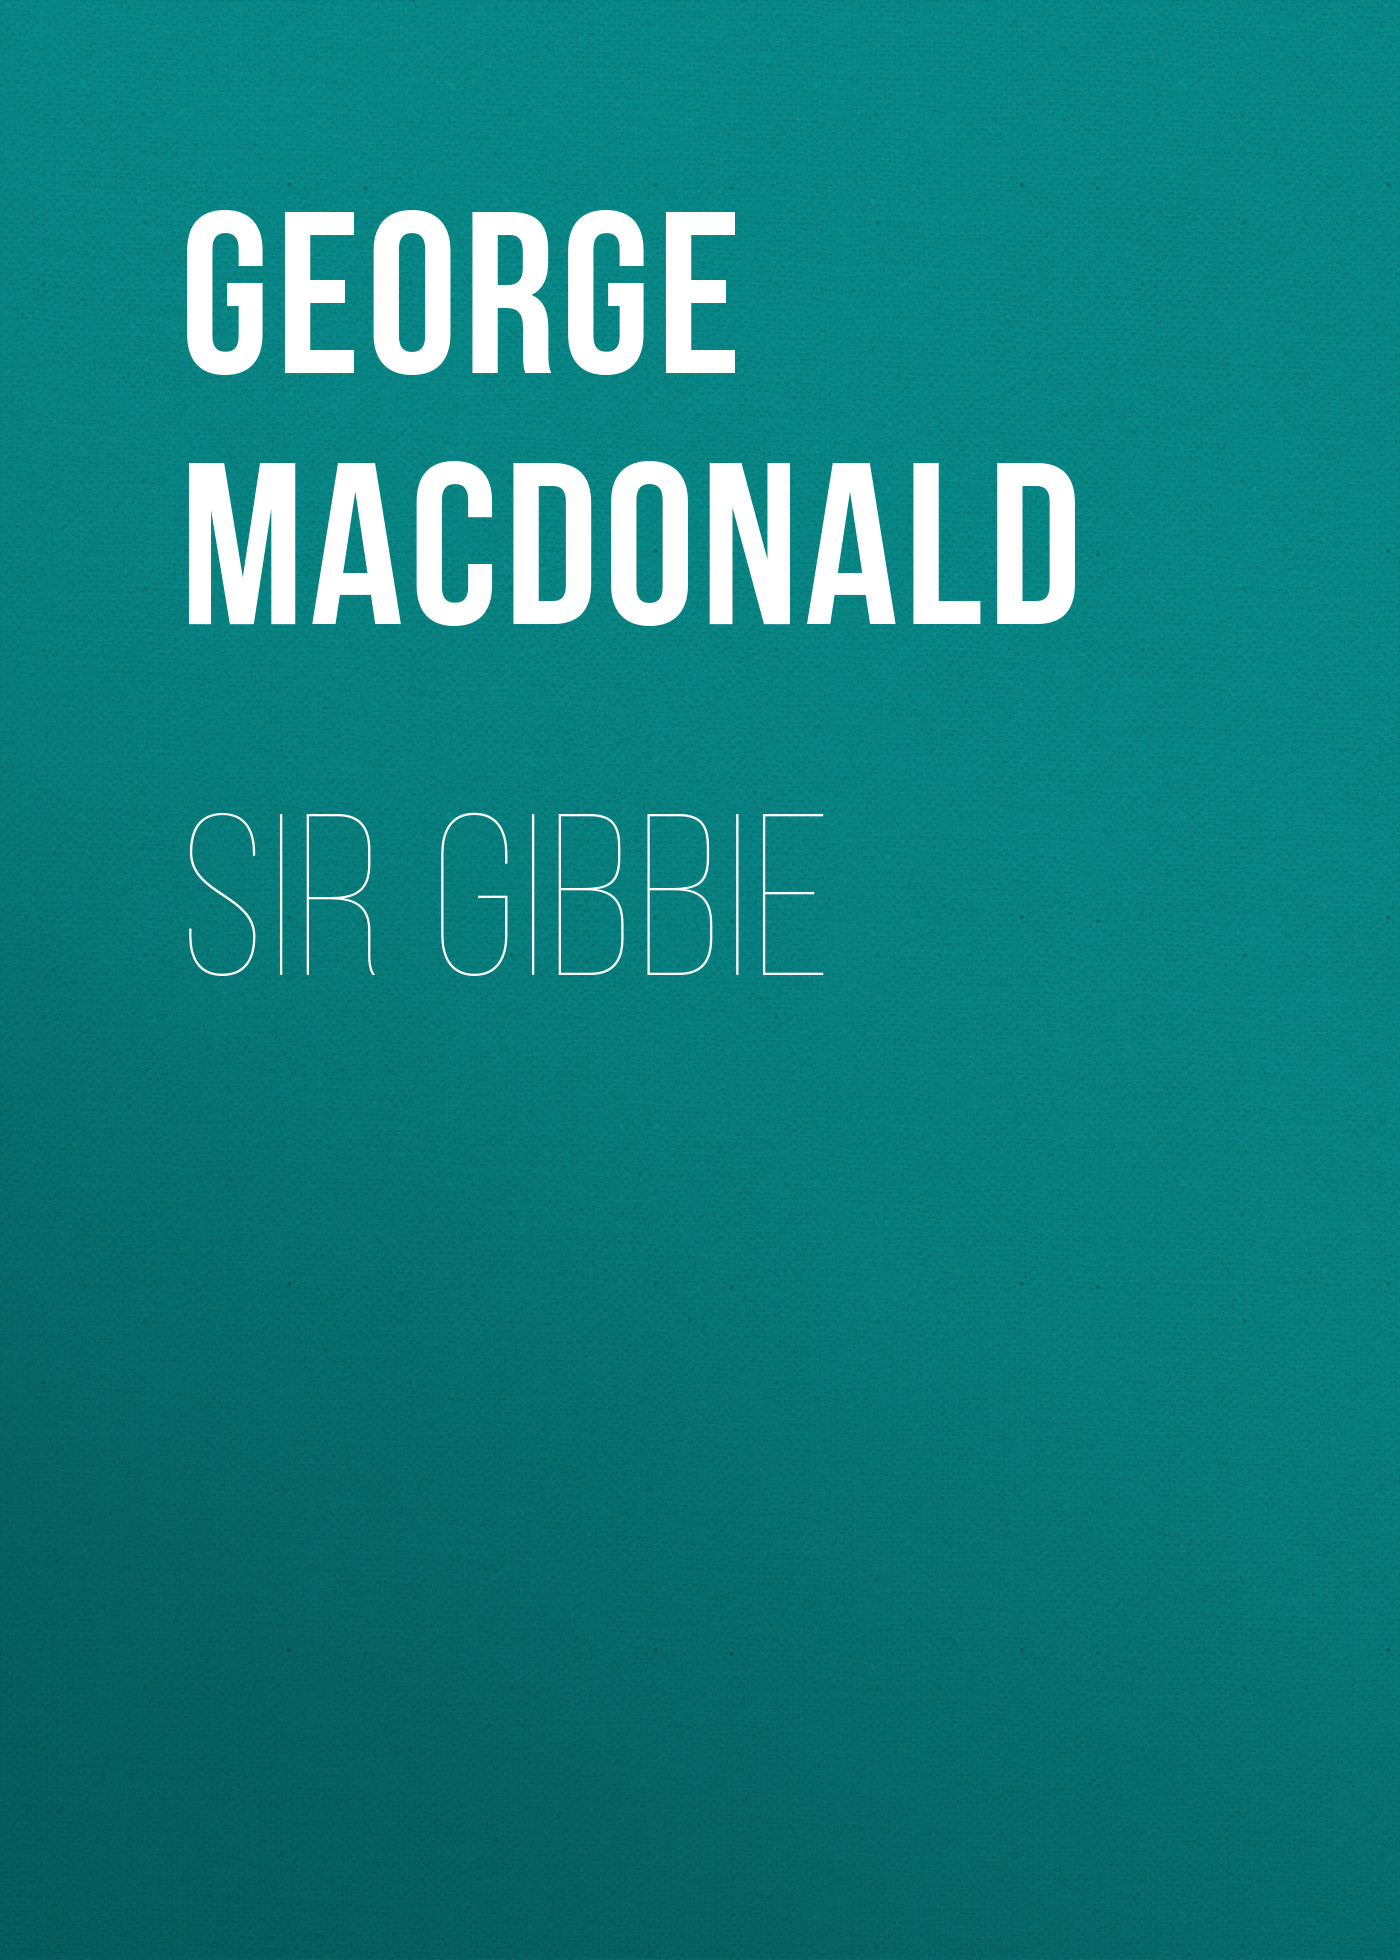 Книга Sir Gibbie из серии , созданная George MacDonald, может относится к жанру Зарубежная классика, Литература 19 века, Зарубежная старинная литература. Стоимость электронной книги Sir Gibbie с идентификатором 35007833 составляет 0 руб.